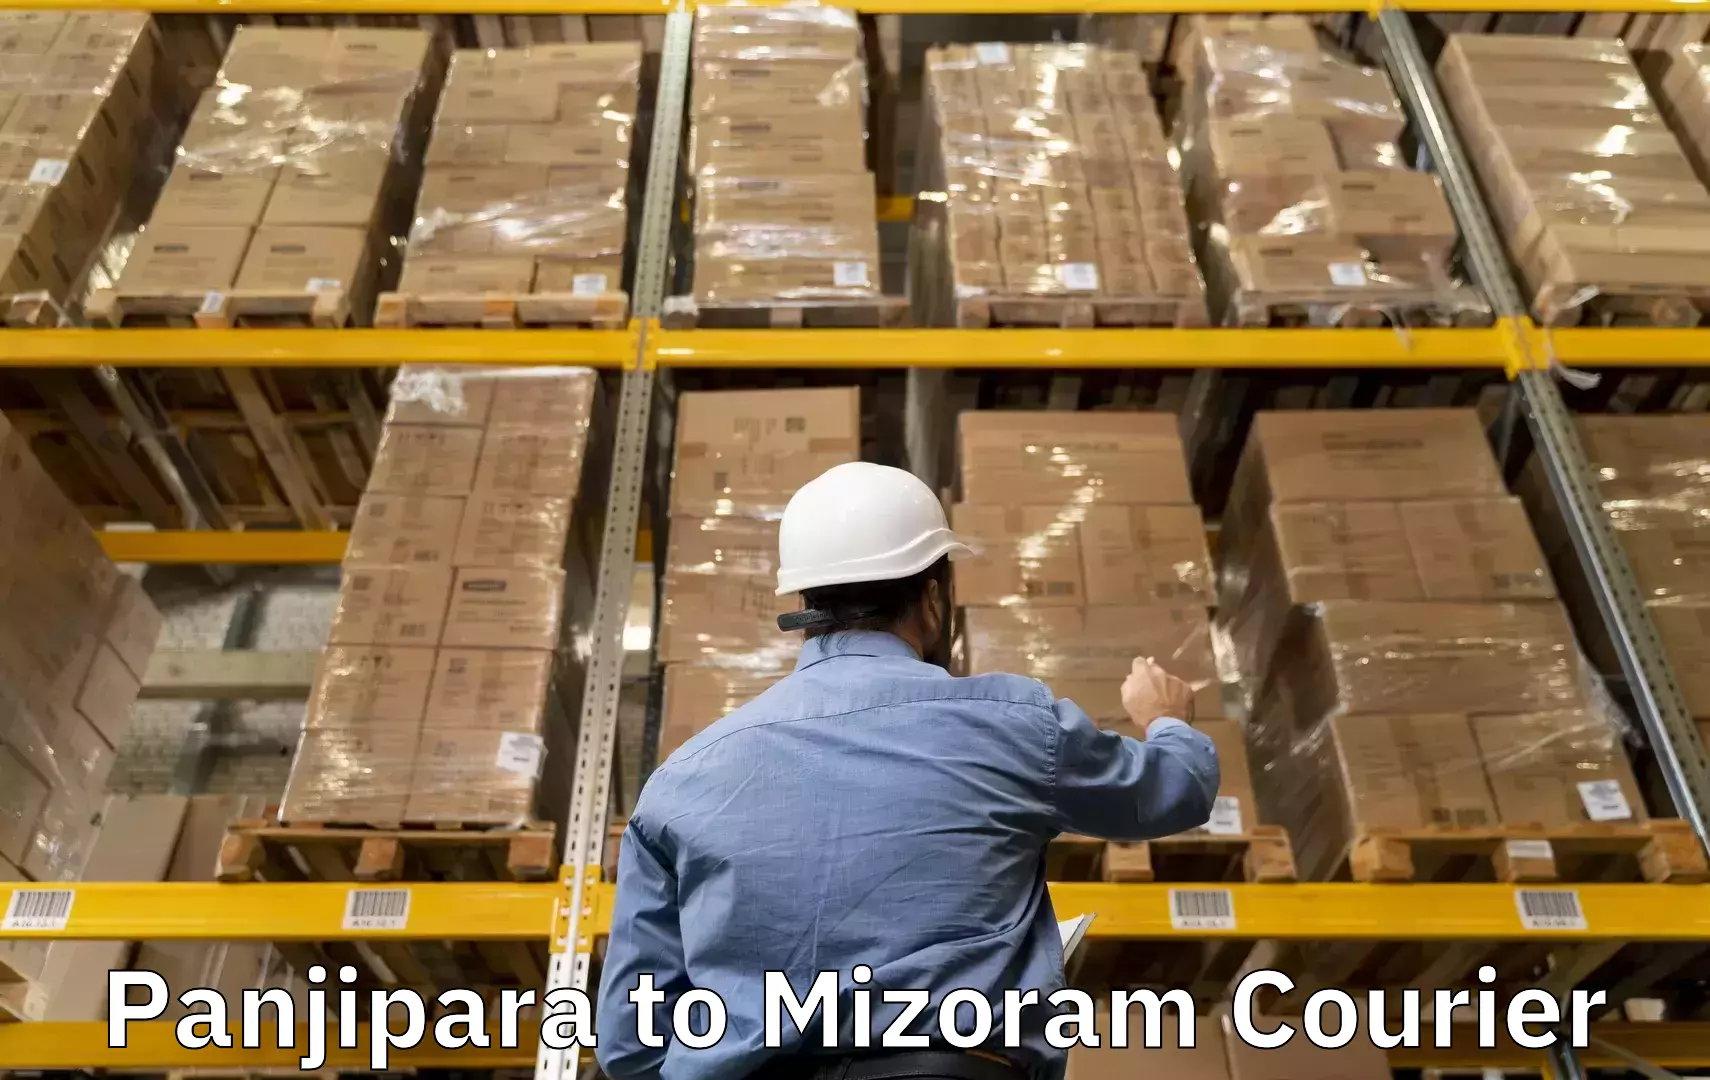 Baggage courier rates calculator Panjipara to Mizoram